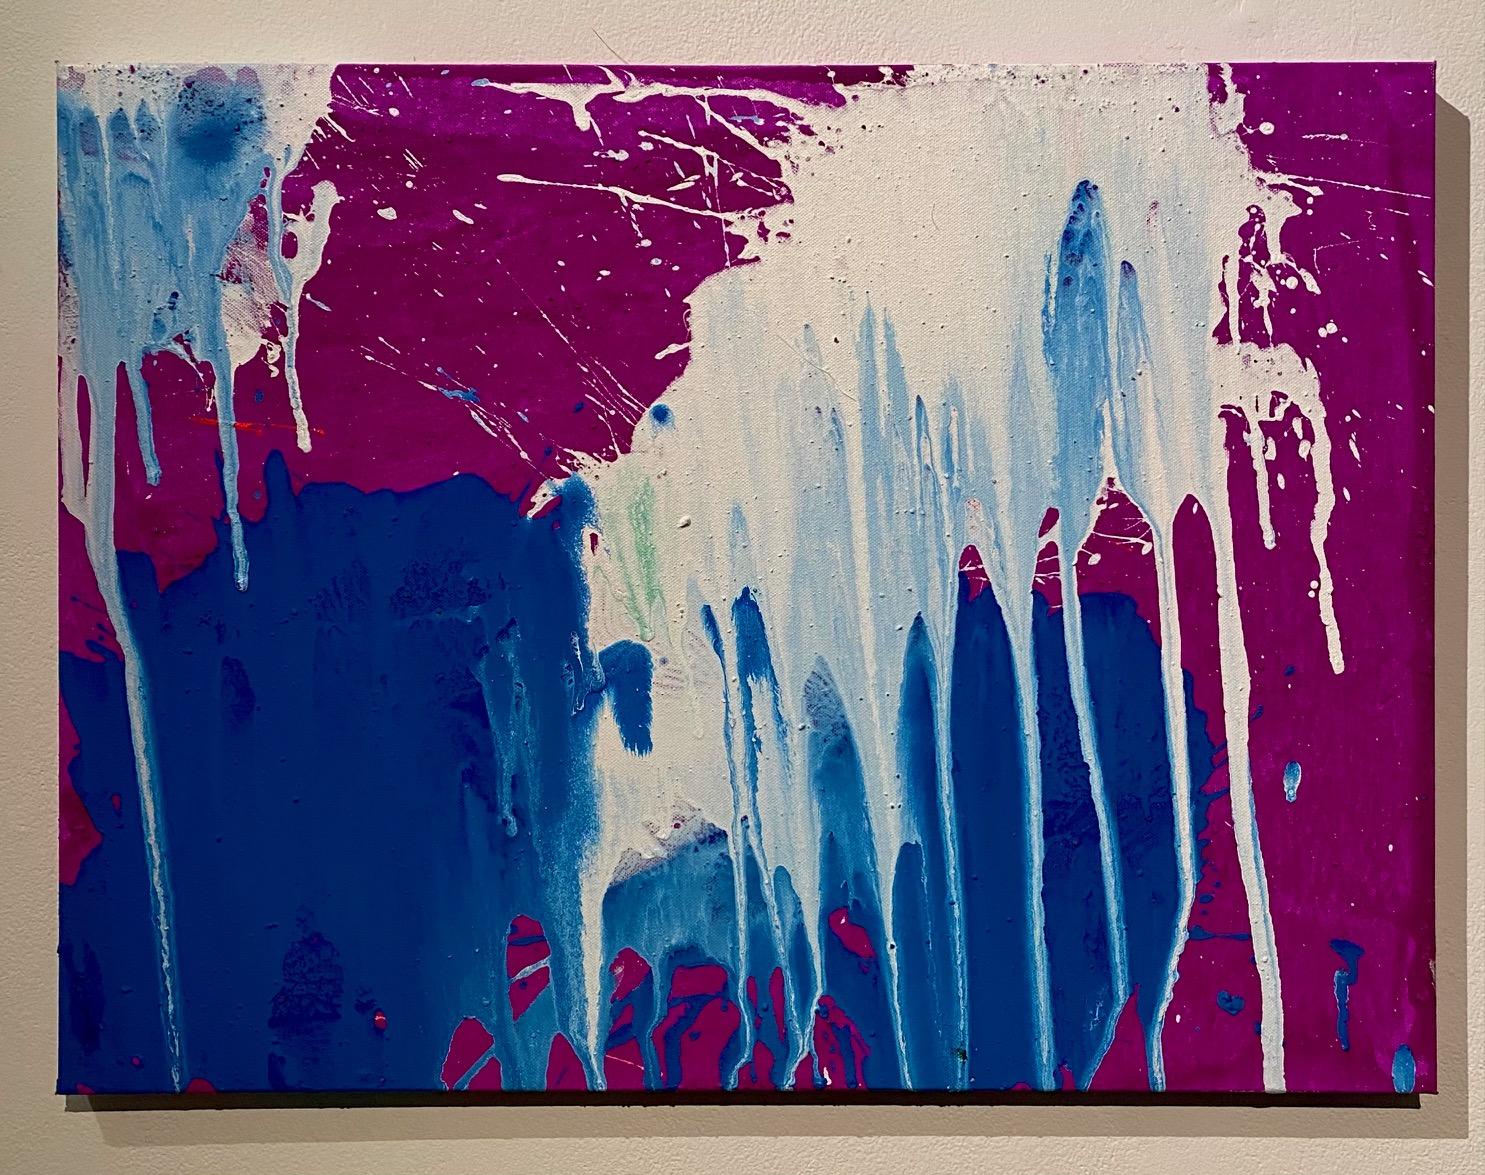 Abstract Painting Ushio Shinohara - « Blanc et bleu sur violet », acrylique sur toile - peinture abstraite de boxe